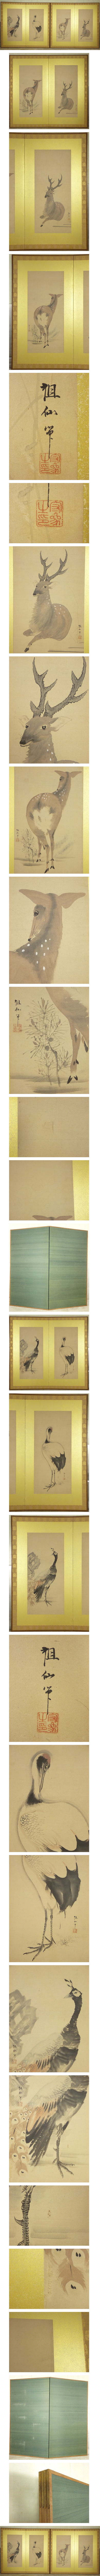 【新品高品質】森祖仙 孔雀 鶴 鹿の図 二枚折 屏風 一双 高さ 約174.5cm 紙本 肉筆 動物画 日本画 花鳥、鳥獣